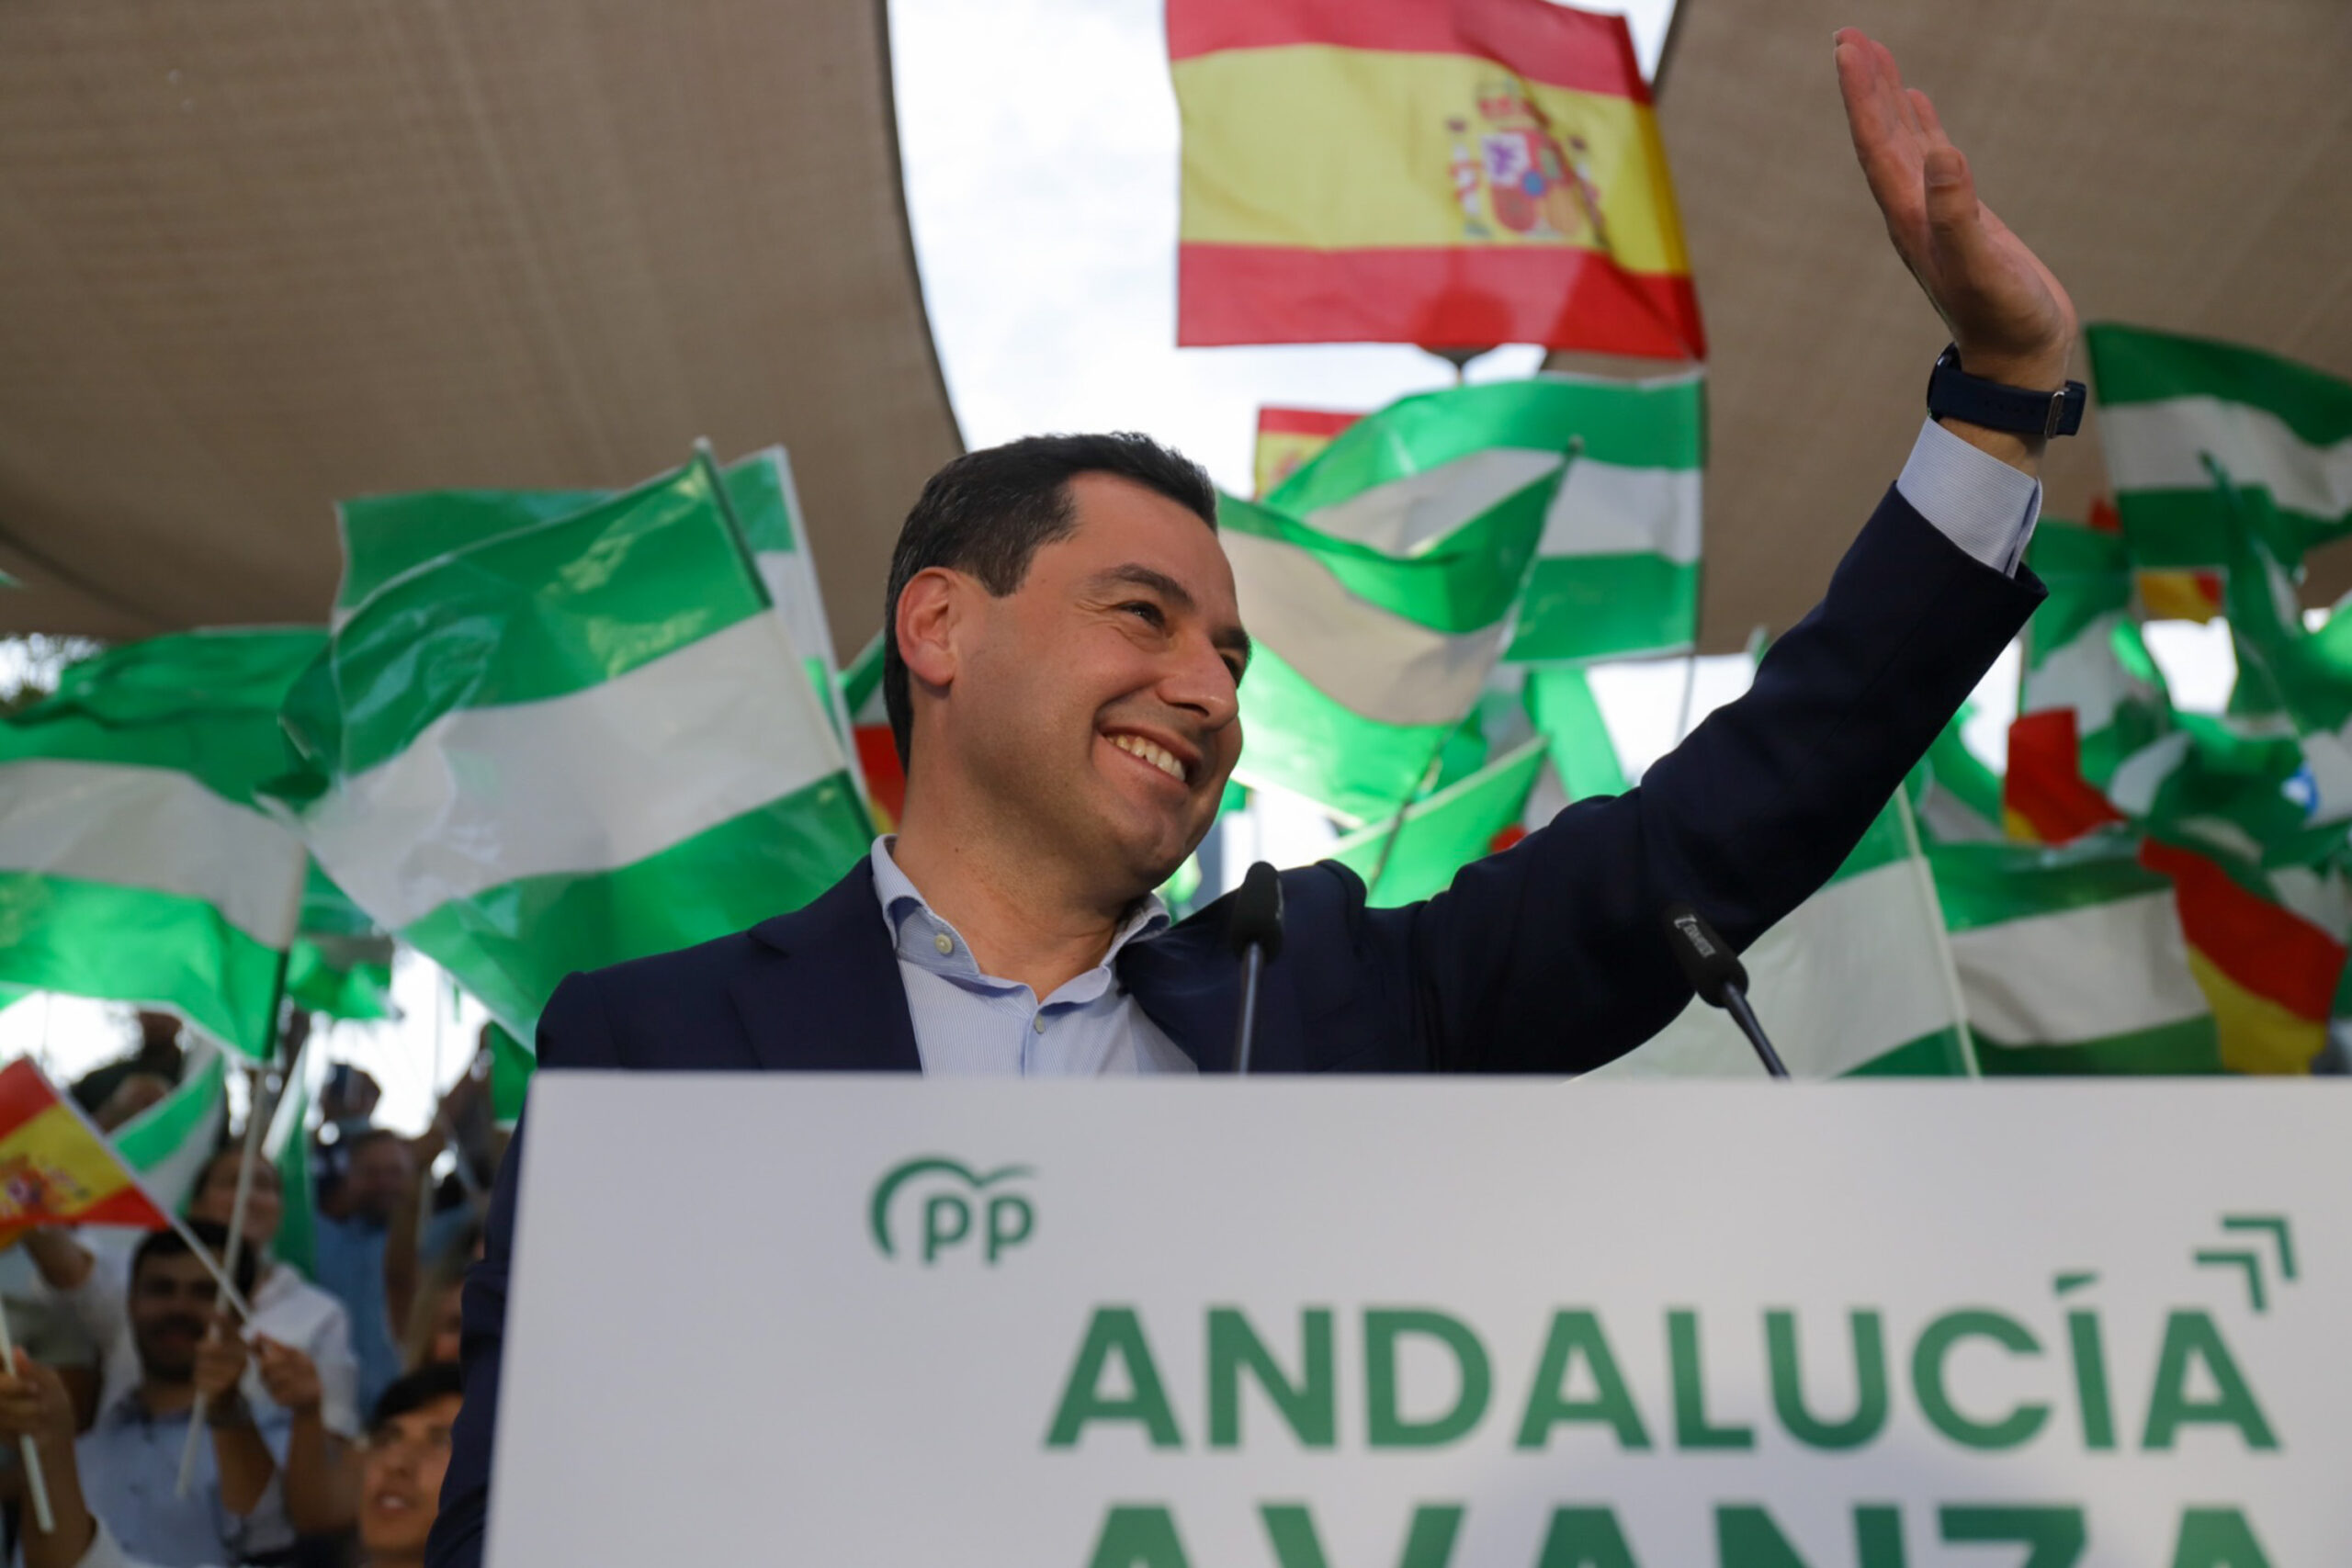 Arranca la campaña electoral en Andalucía de cara a la cita del 19 de junio